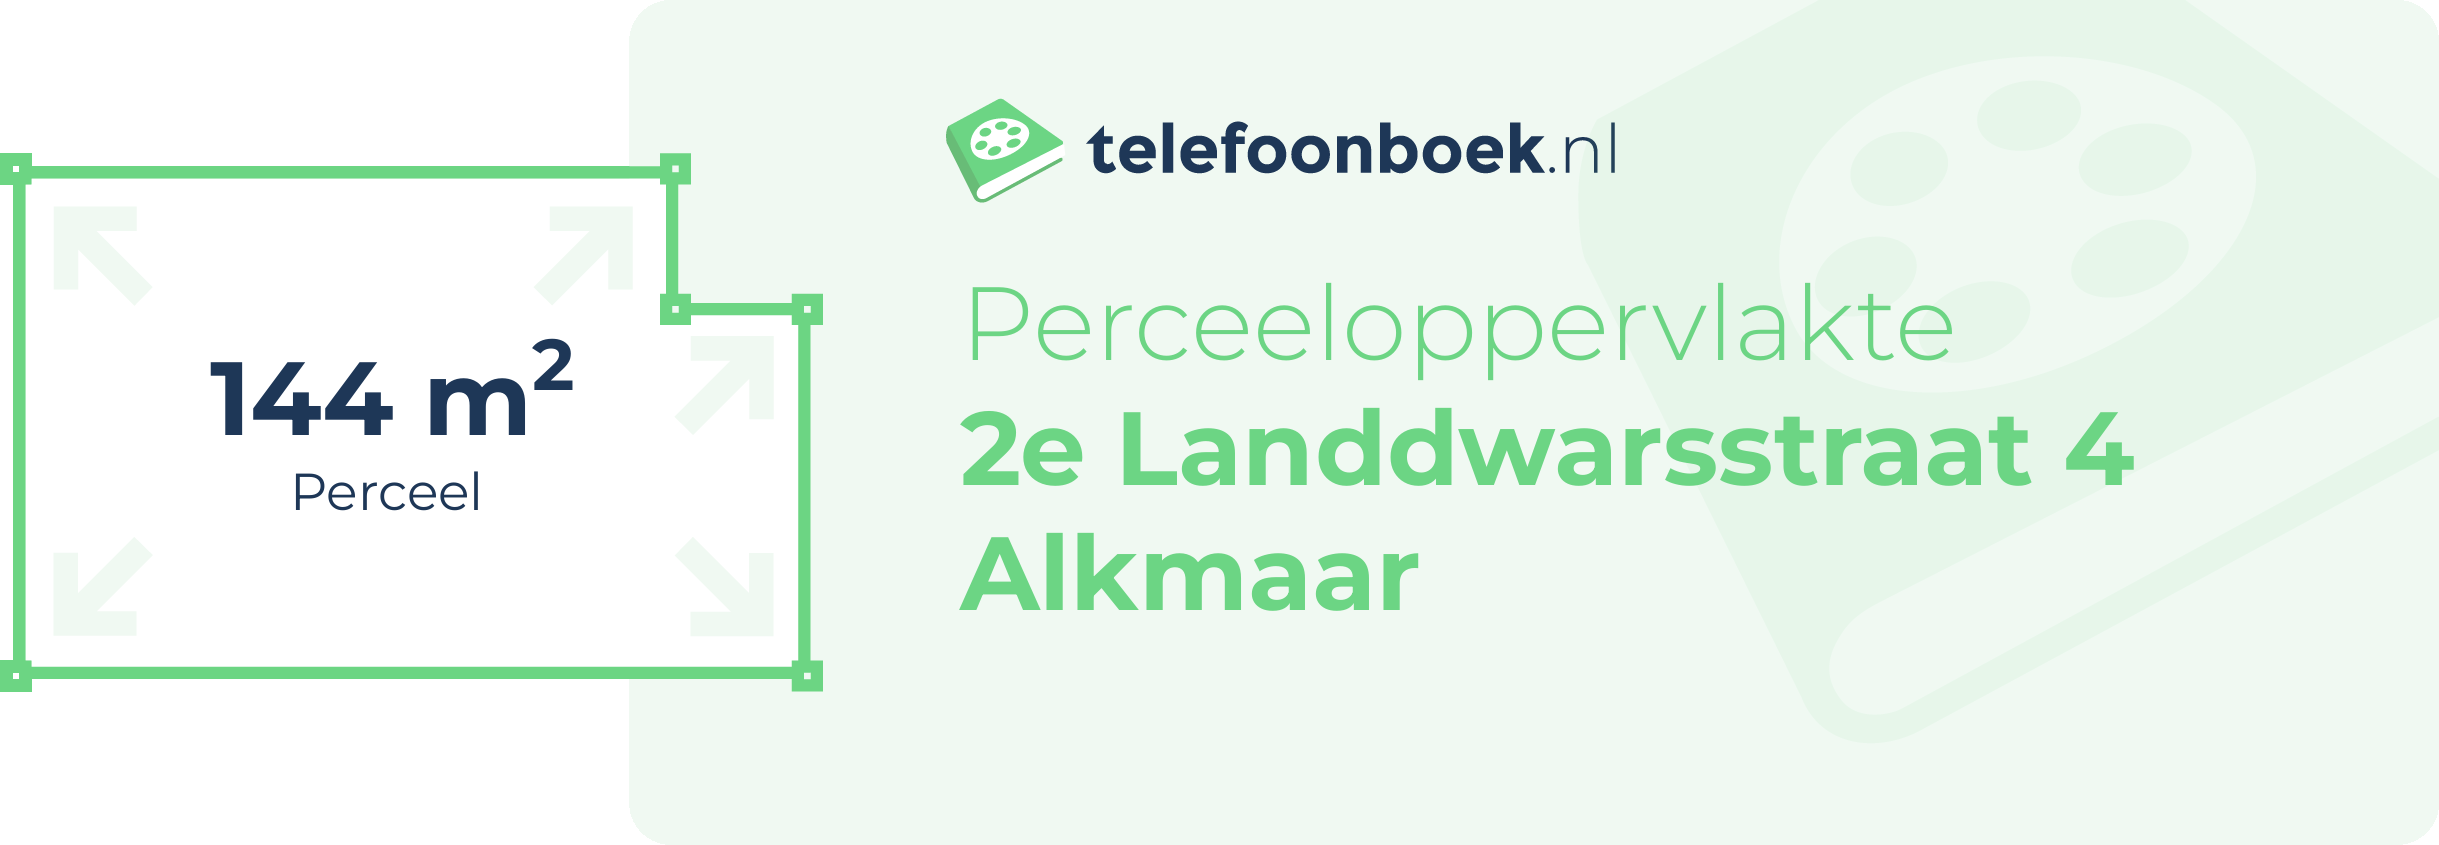 Perceeloppervlakte 2e Landdwarsstraat 4 Alkmaar